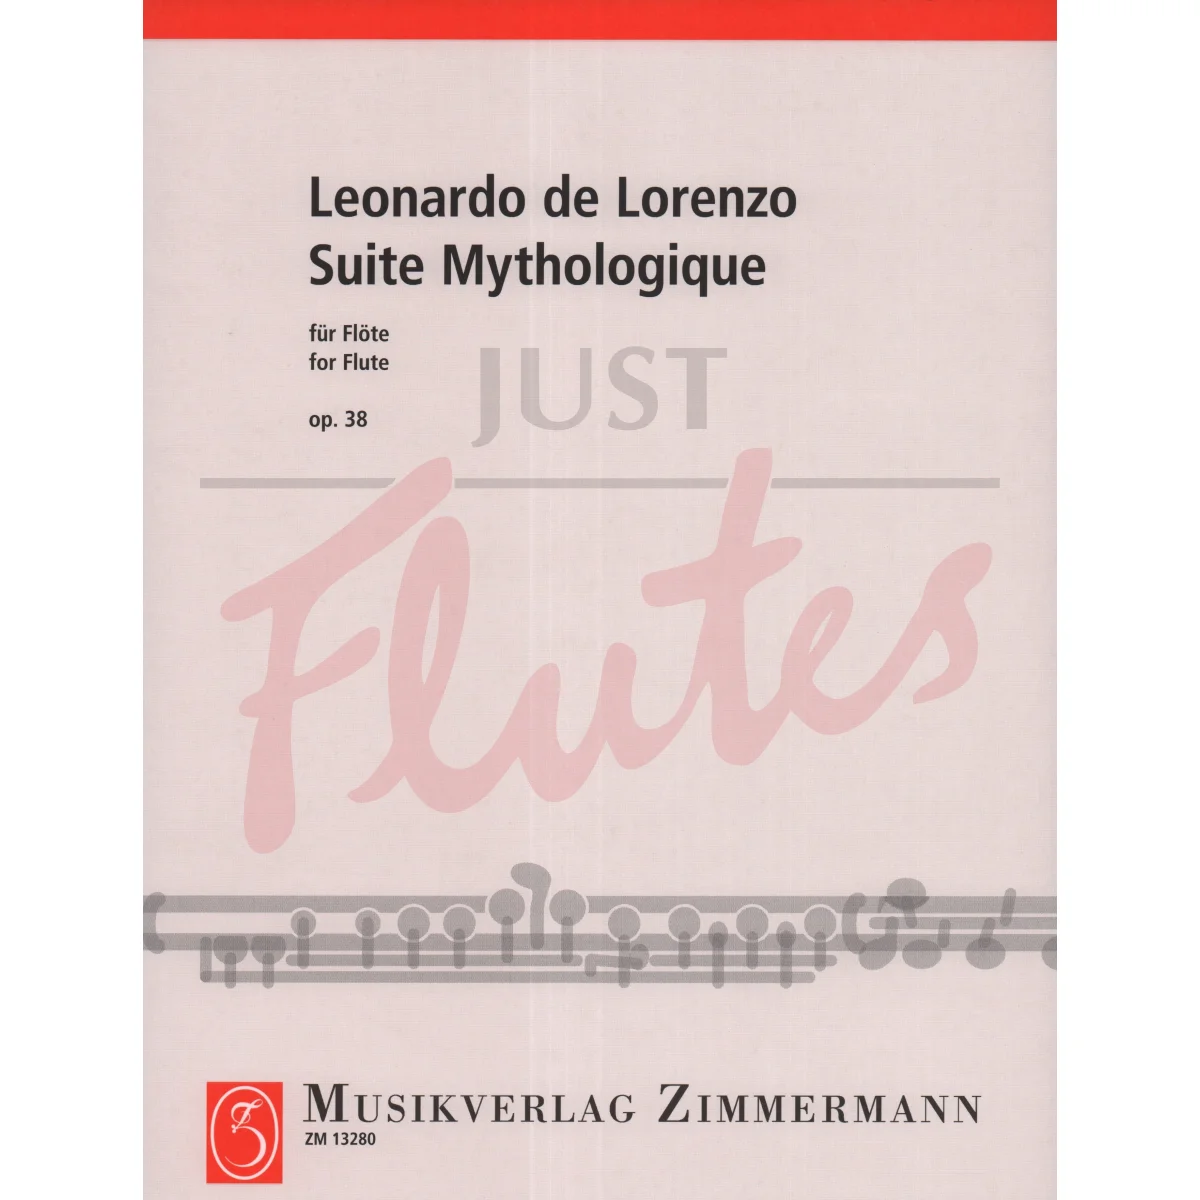 Suite Mythologique for Solo Flute